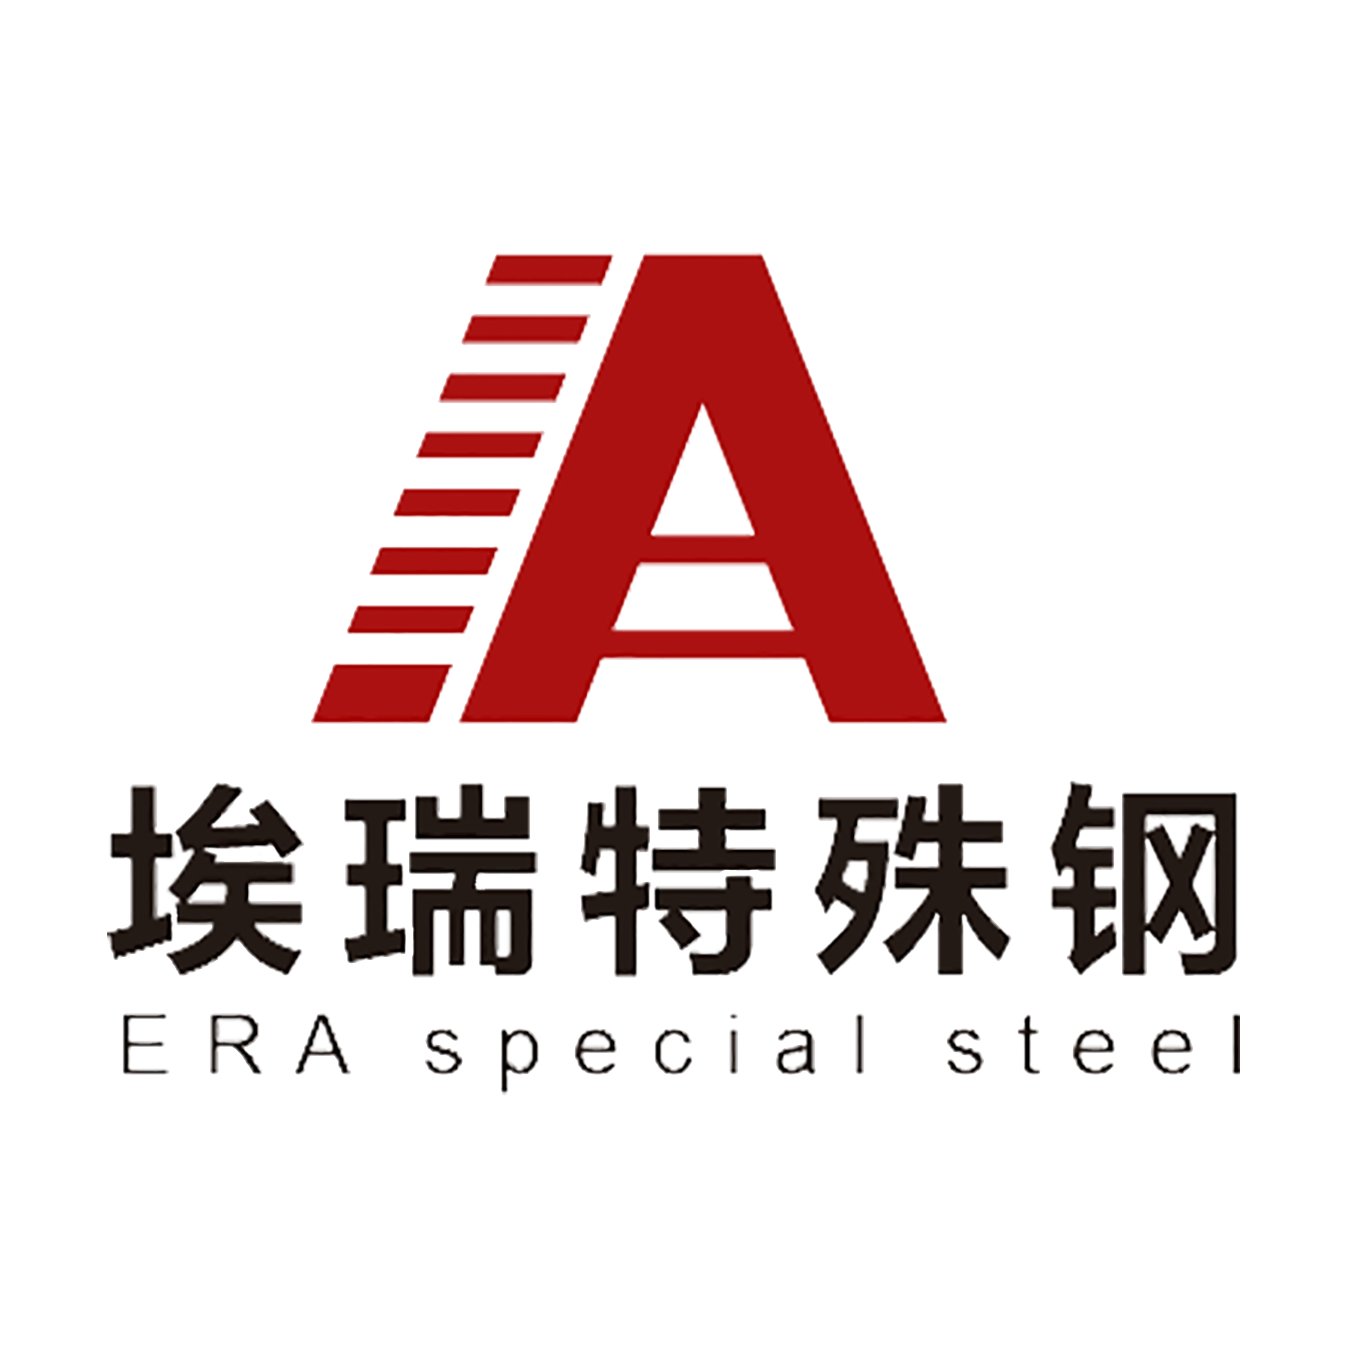 常州埃瑞特殊钢有限公司-专注于高品质模具钢材销售为主、配套的机加工、热处理和表面PVD涂层处理服务。